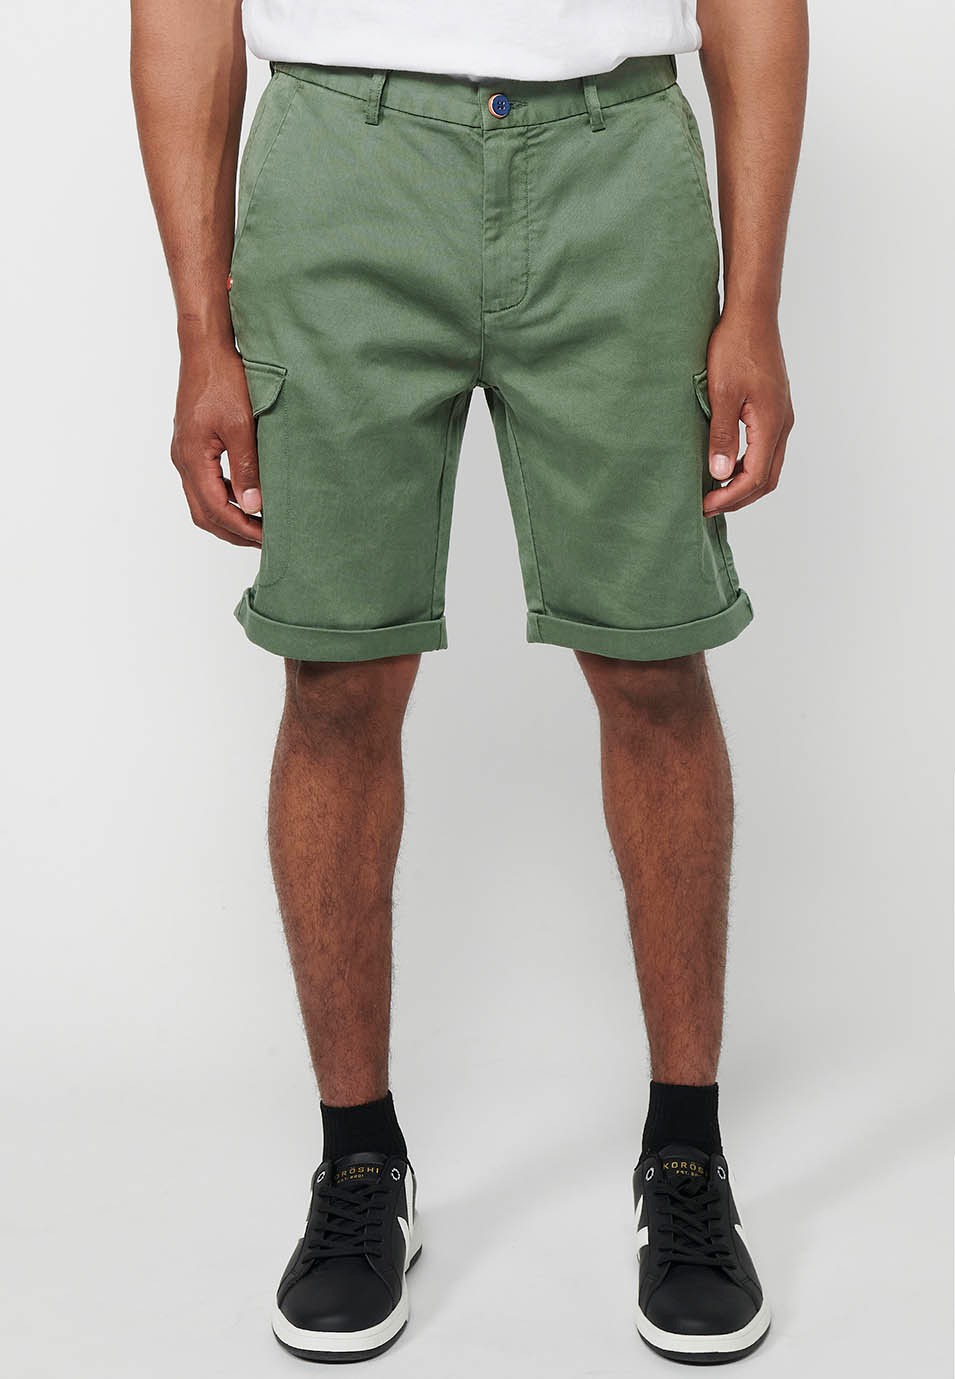 Pantalón corto con Cintura engomada y cierre con cremallera y botón con Bolsillos, dos laterales con solapa de Color Verde para Hombre 1